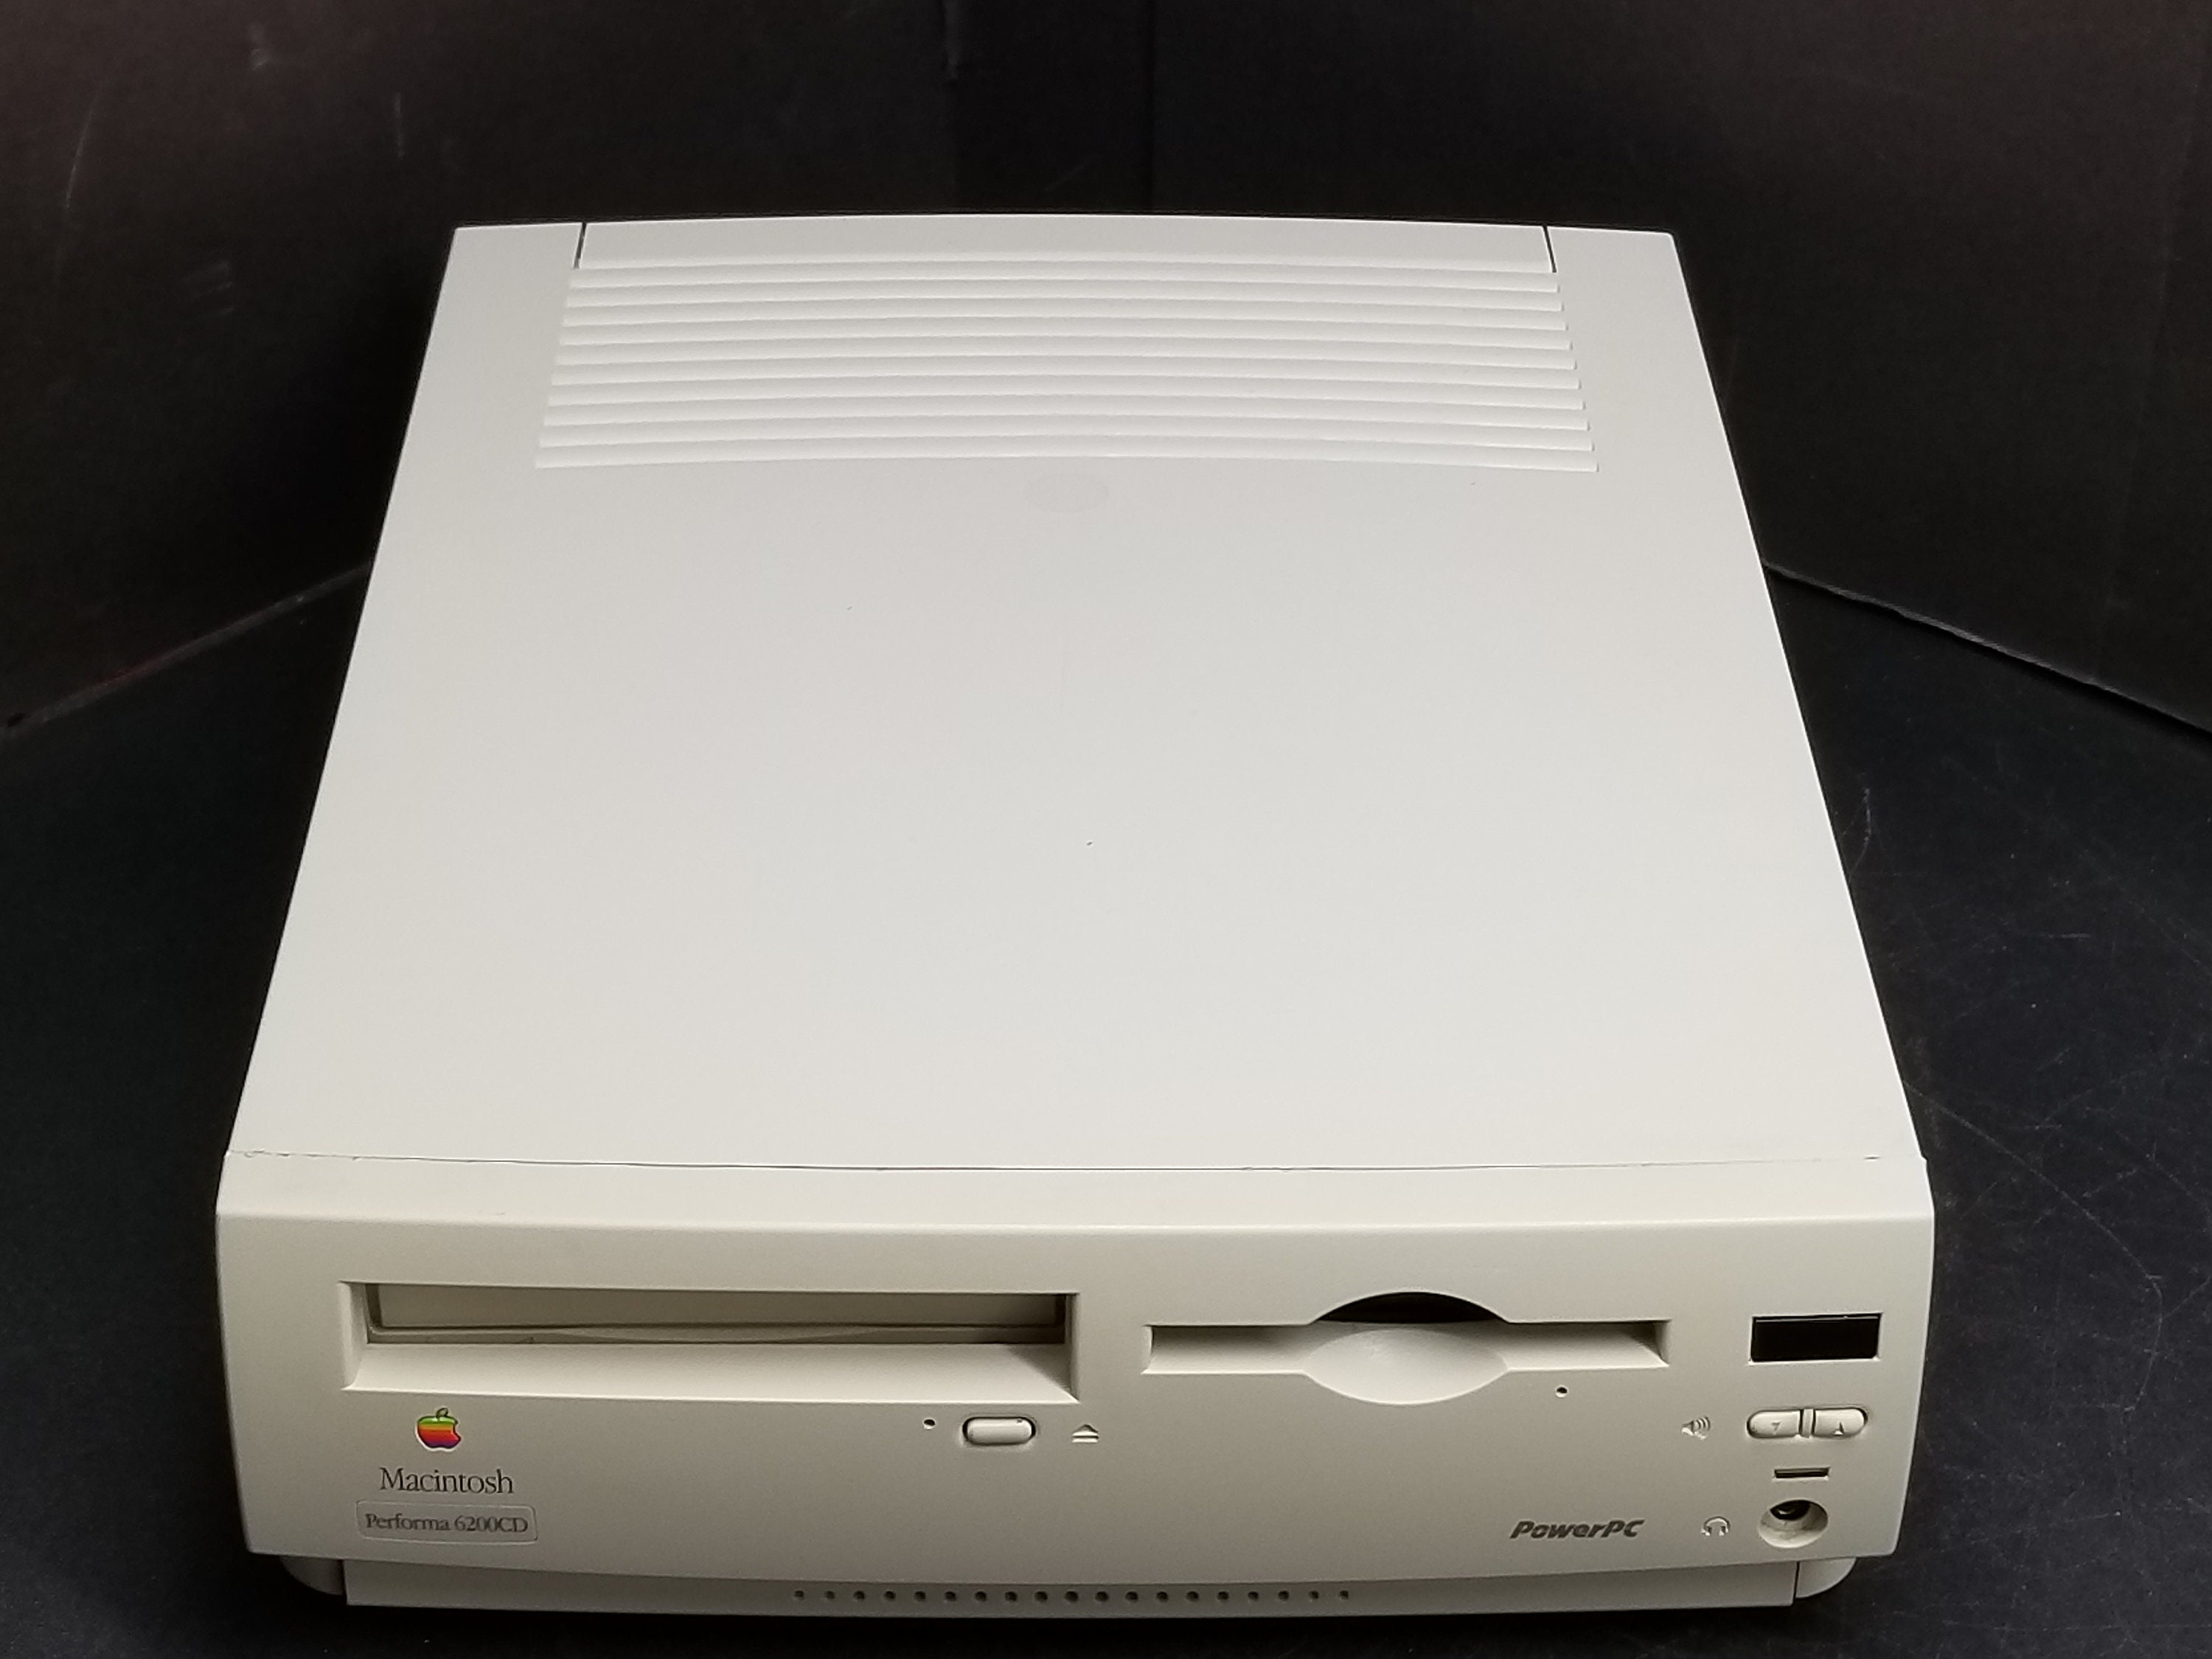 Vintage Apple Macintosh Performa 6200CD Powerpc Tested Not Working 